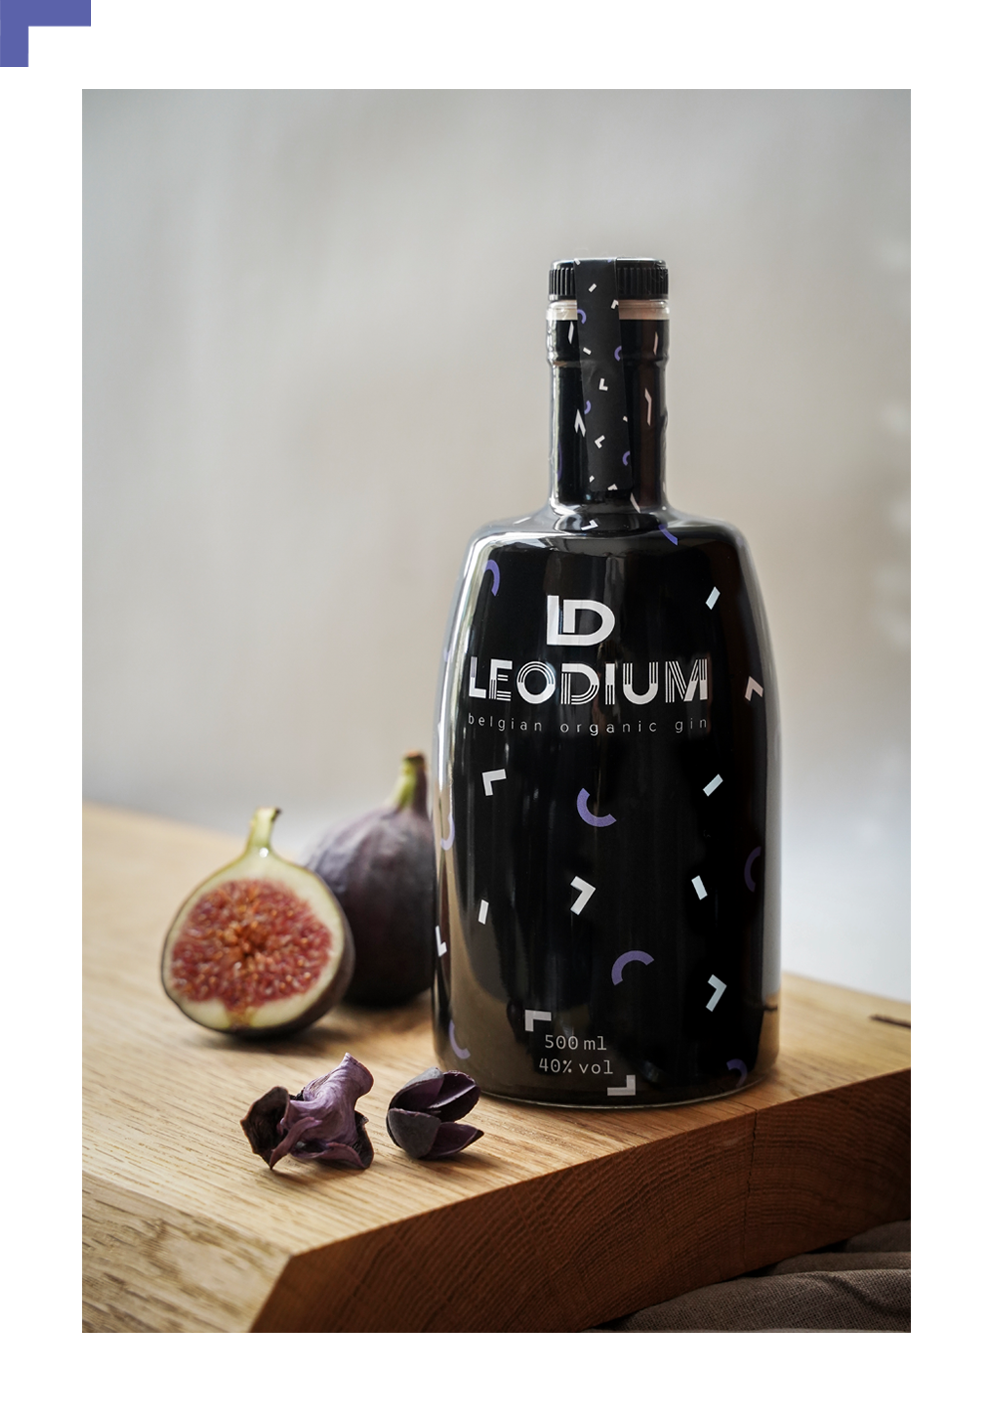 Leodium Belgium organic gin...